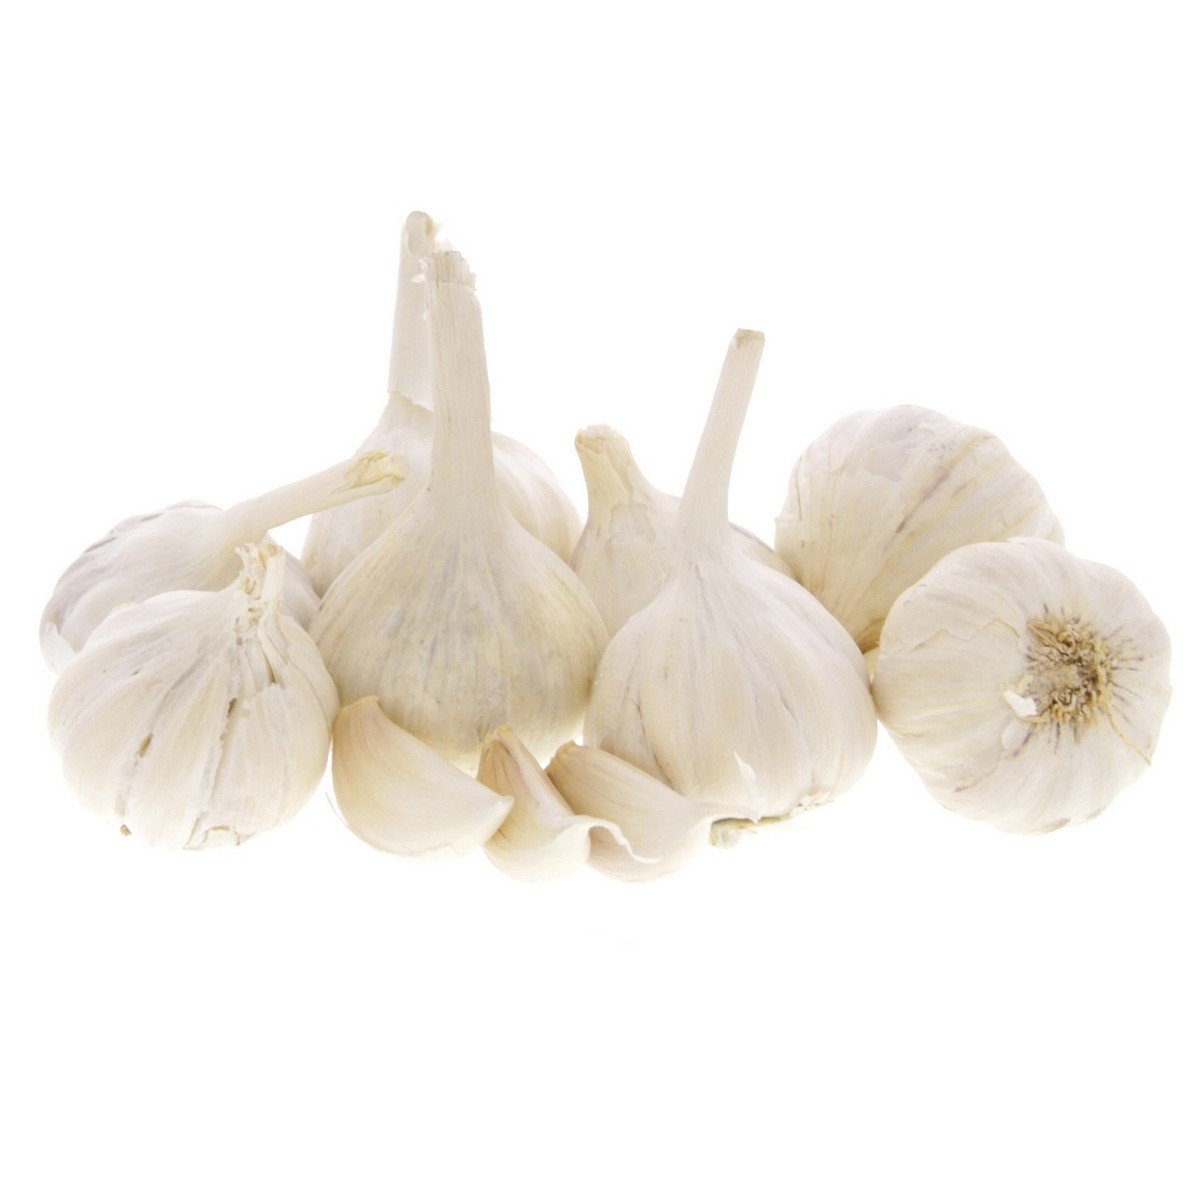 Buy Garlic India 200 g Online at Best Price | Flavouring Vegetable | Lulu KSA in Saudi Arabia